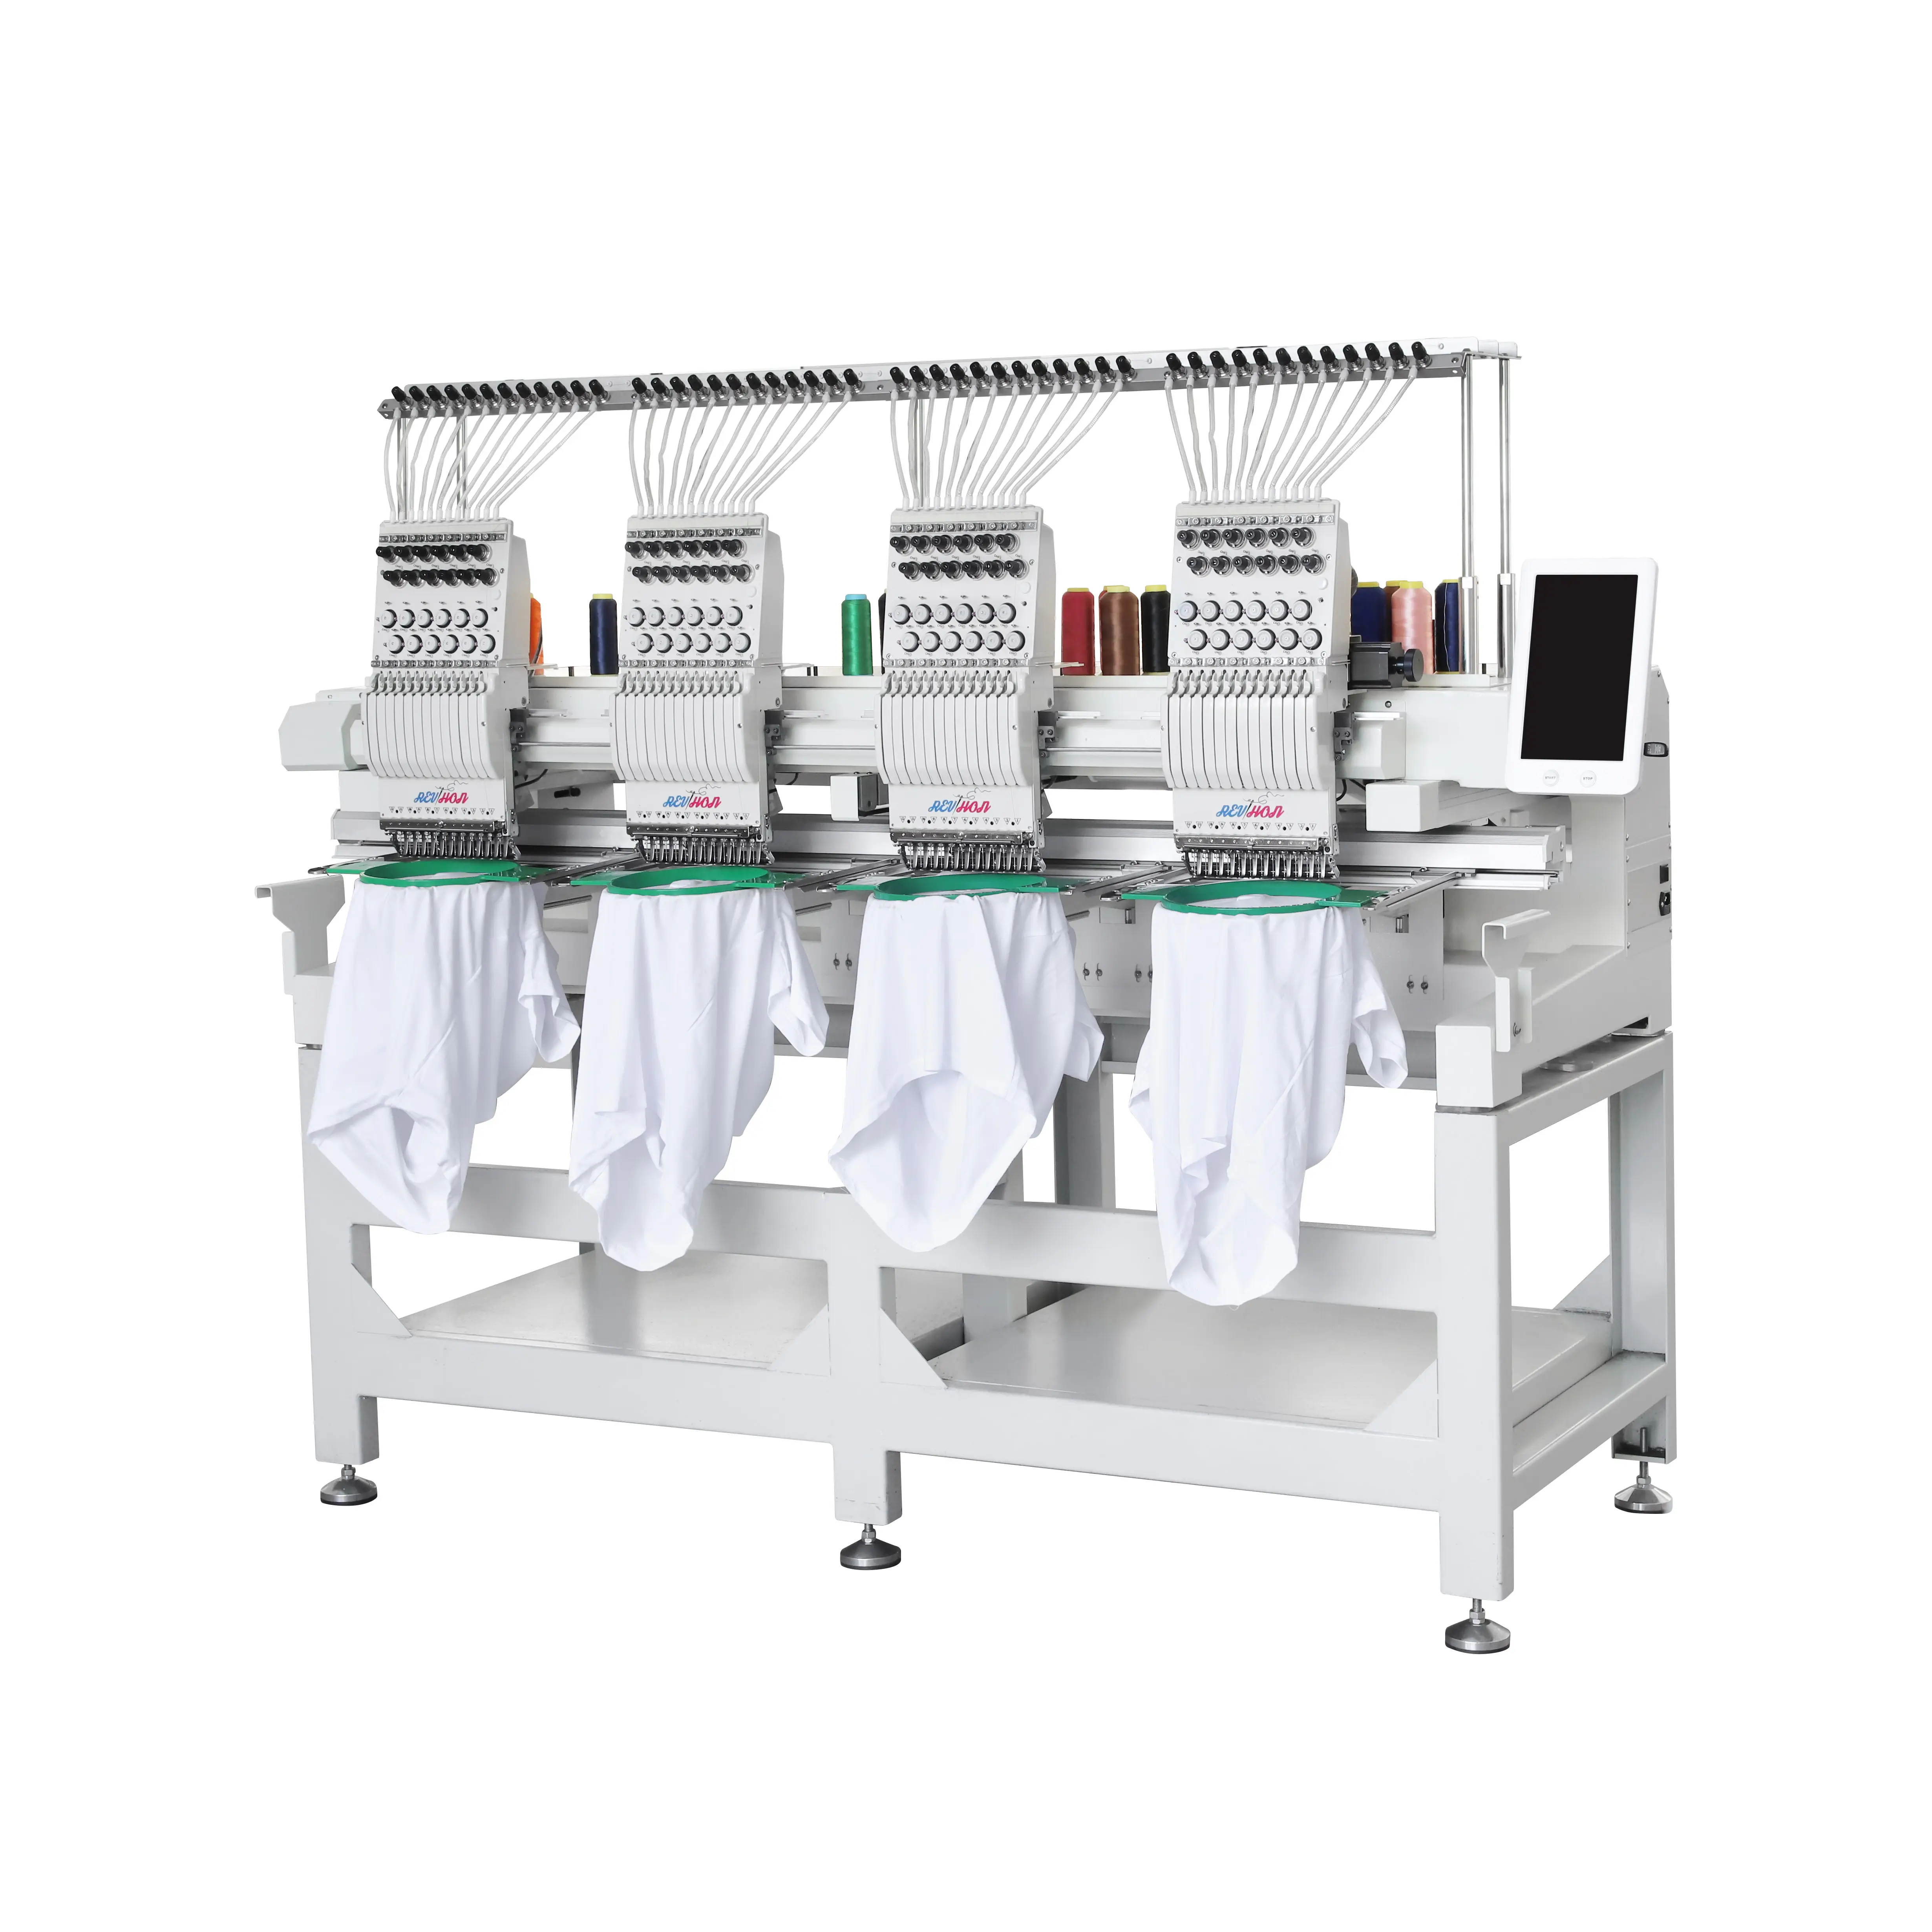 REVHON Machine à broder les t-shirts industrielle de haute qualité automatique avec 4 têtes et 12 aiguilles